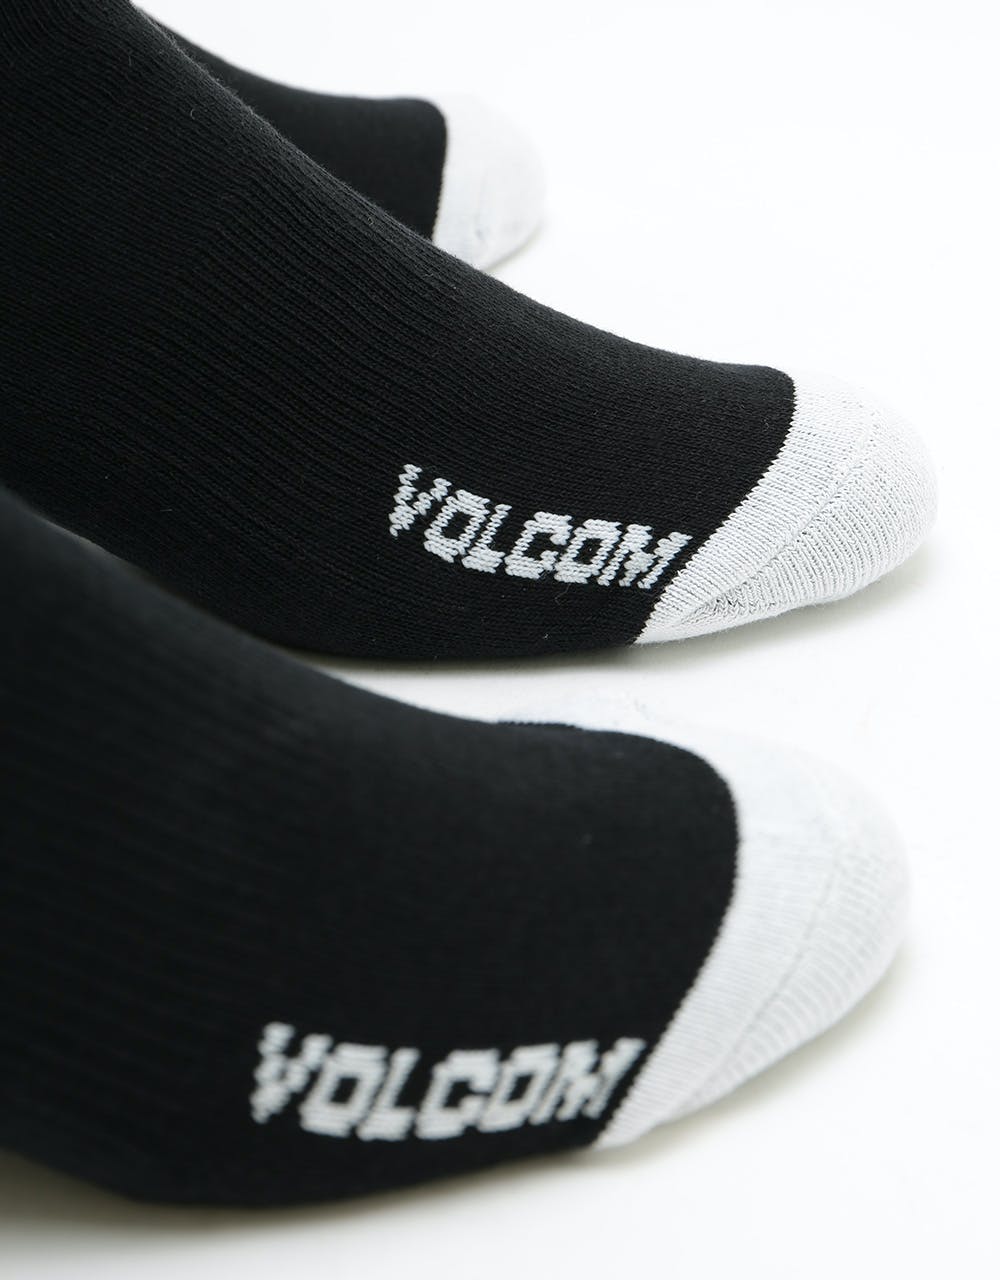 Volcom Full Stone 3 Pack Socks - Black